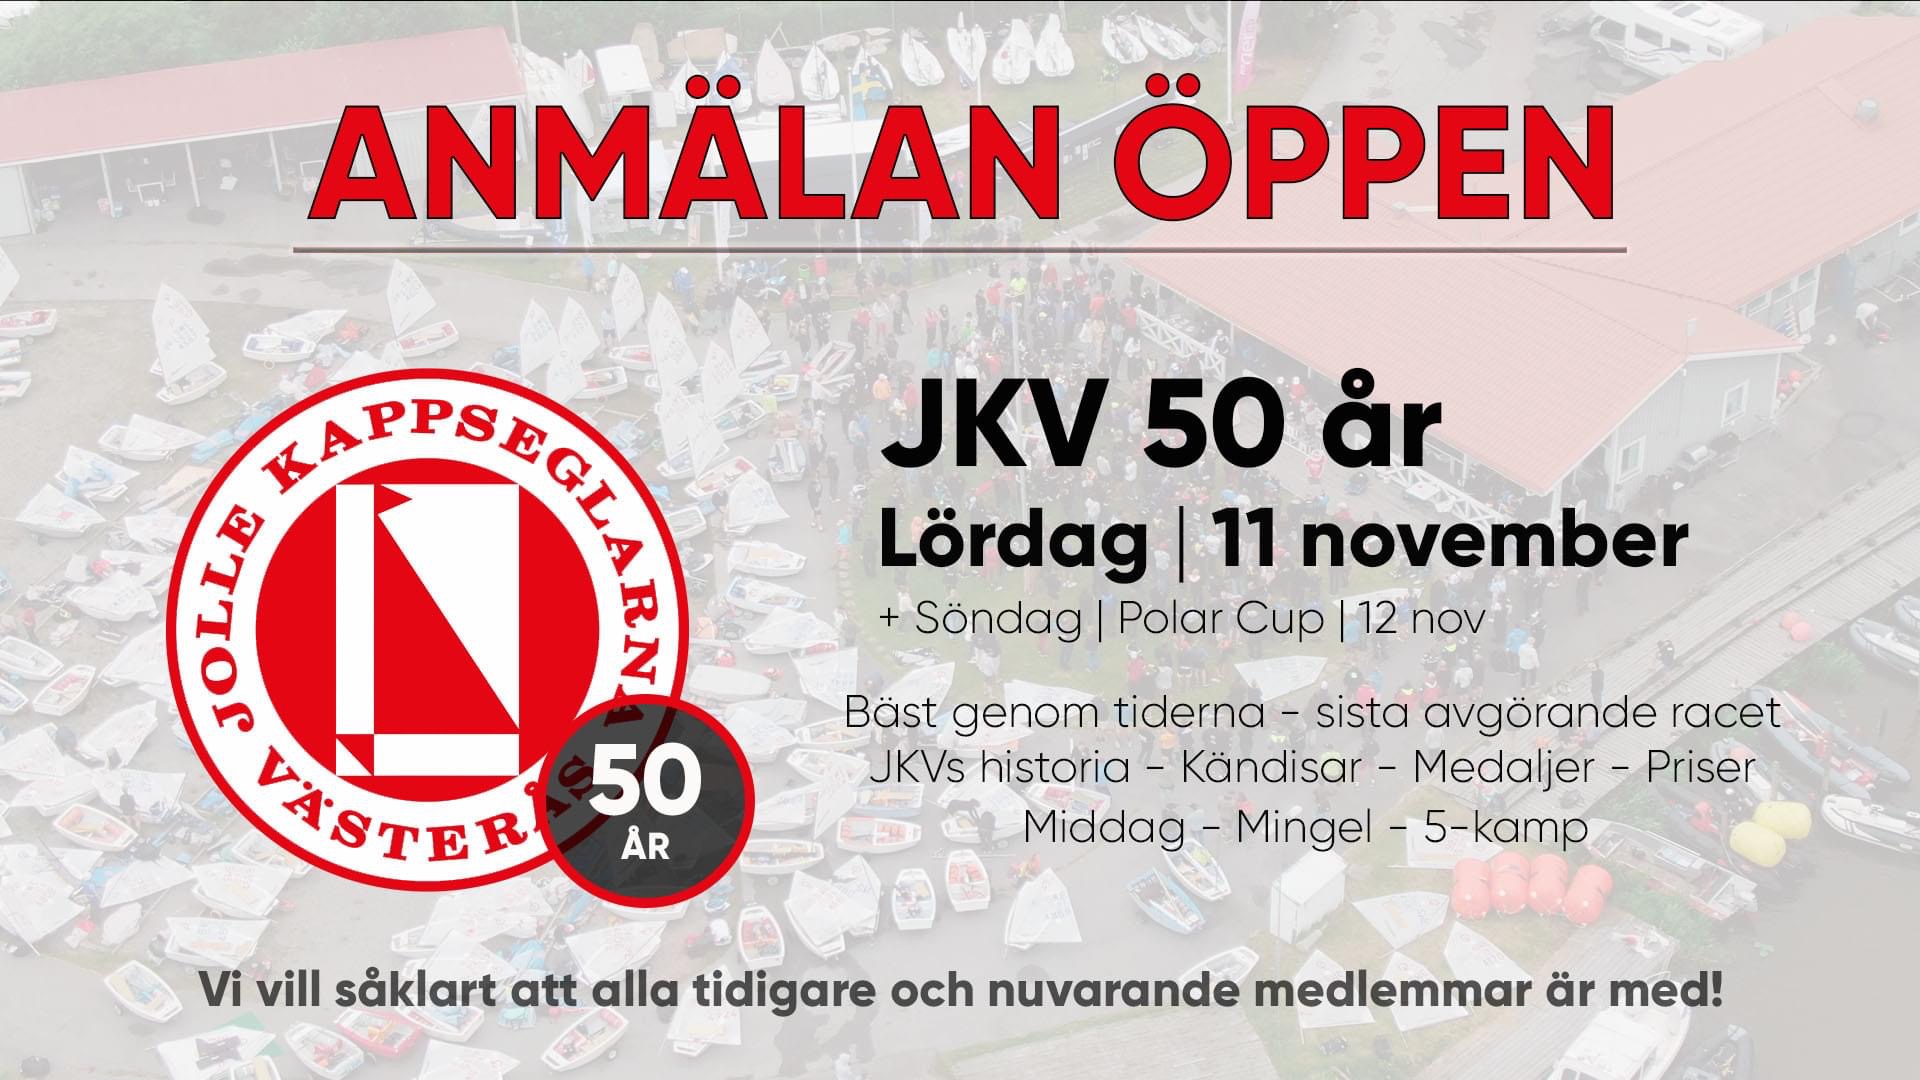 image: Anmälan öppen till JKV:s 50-års fest!